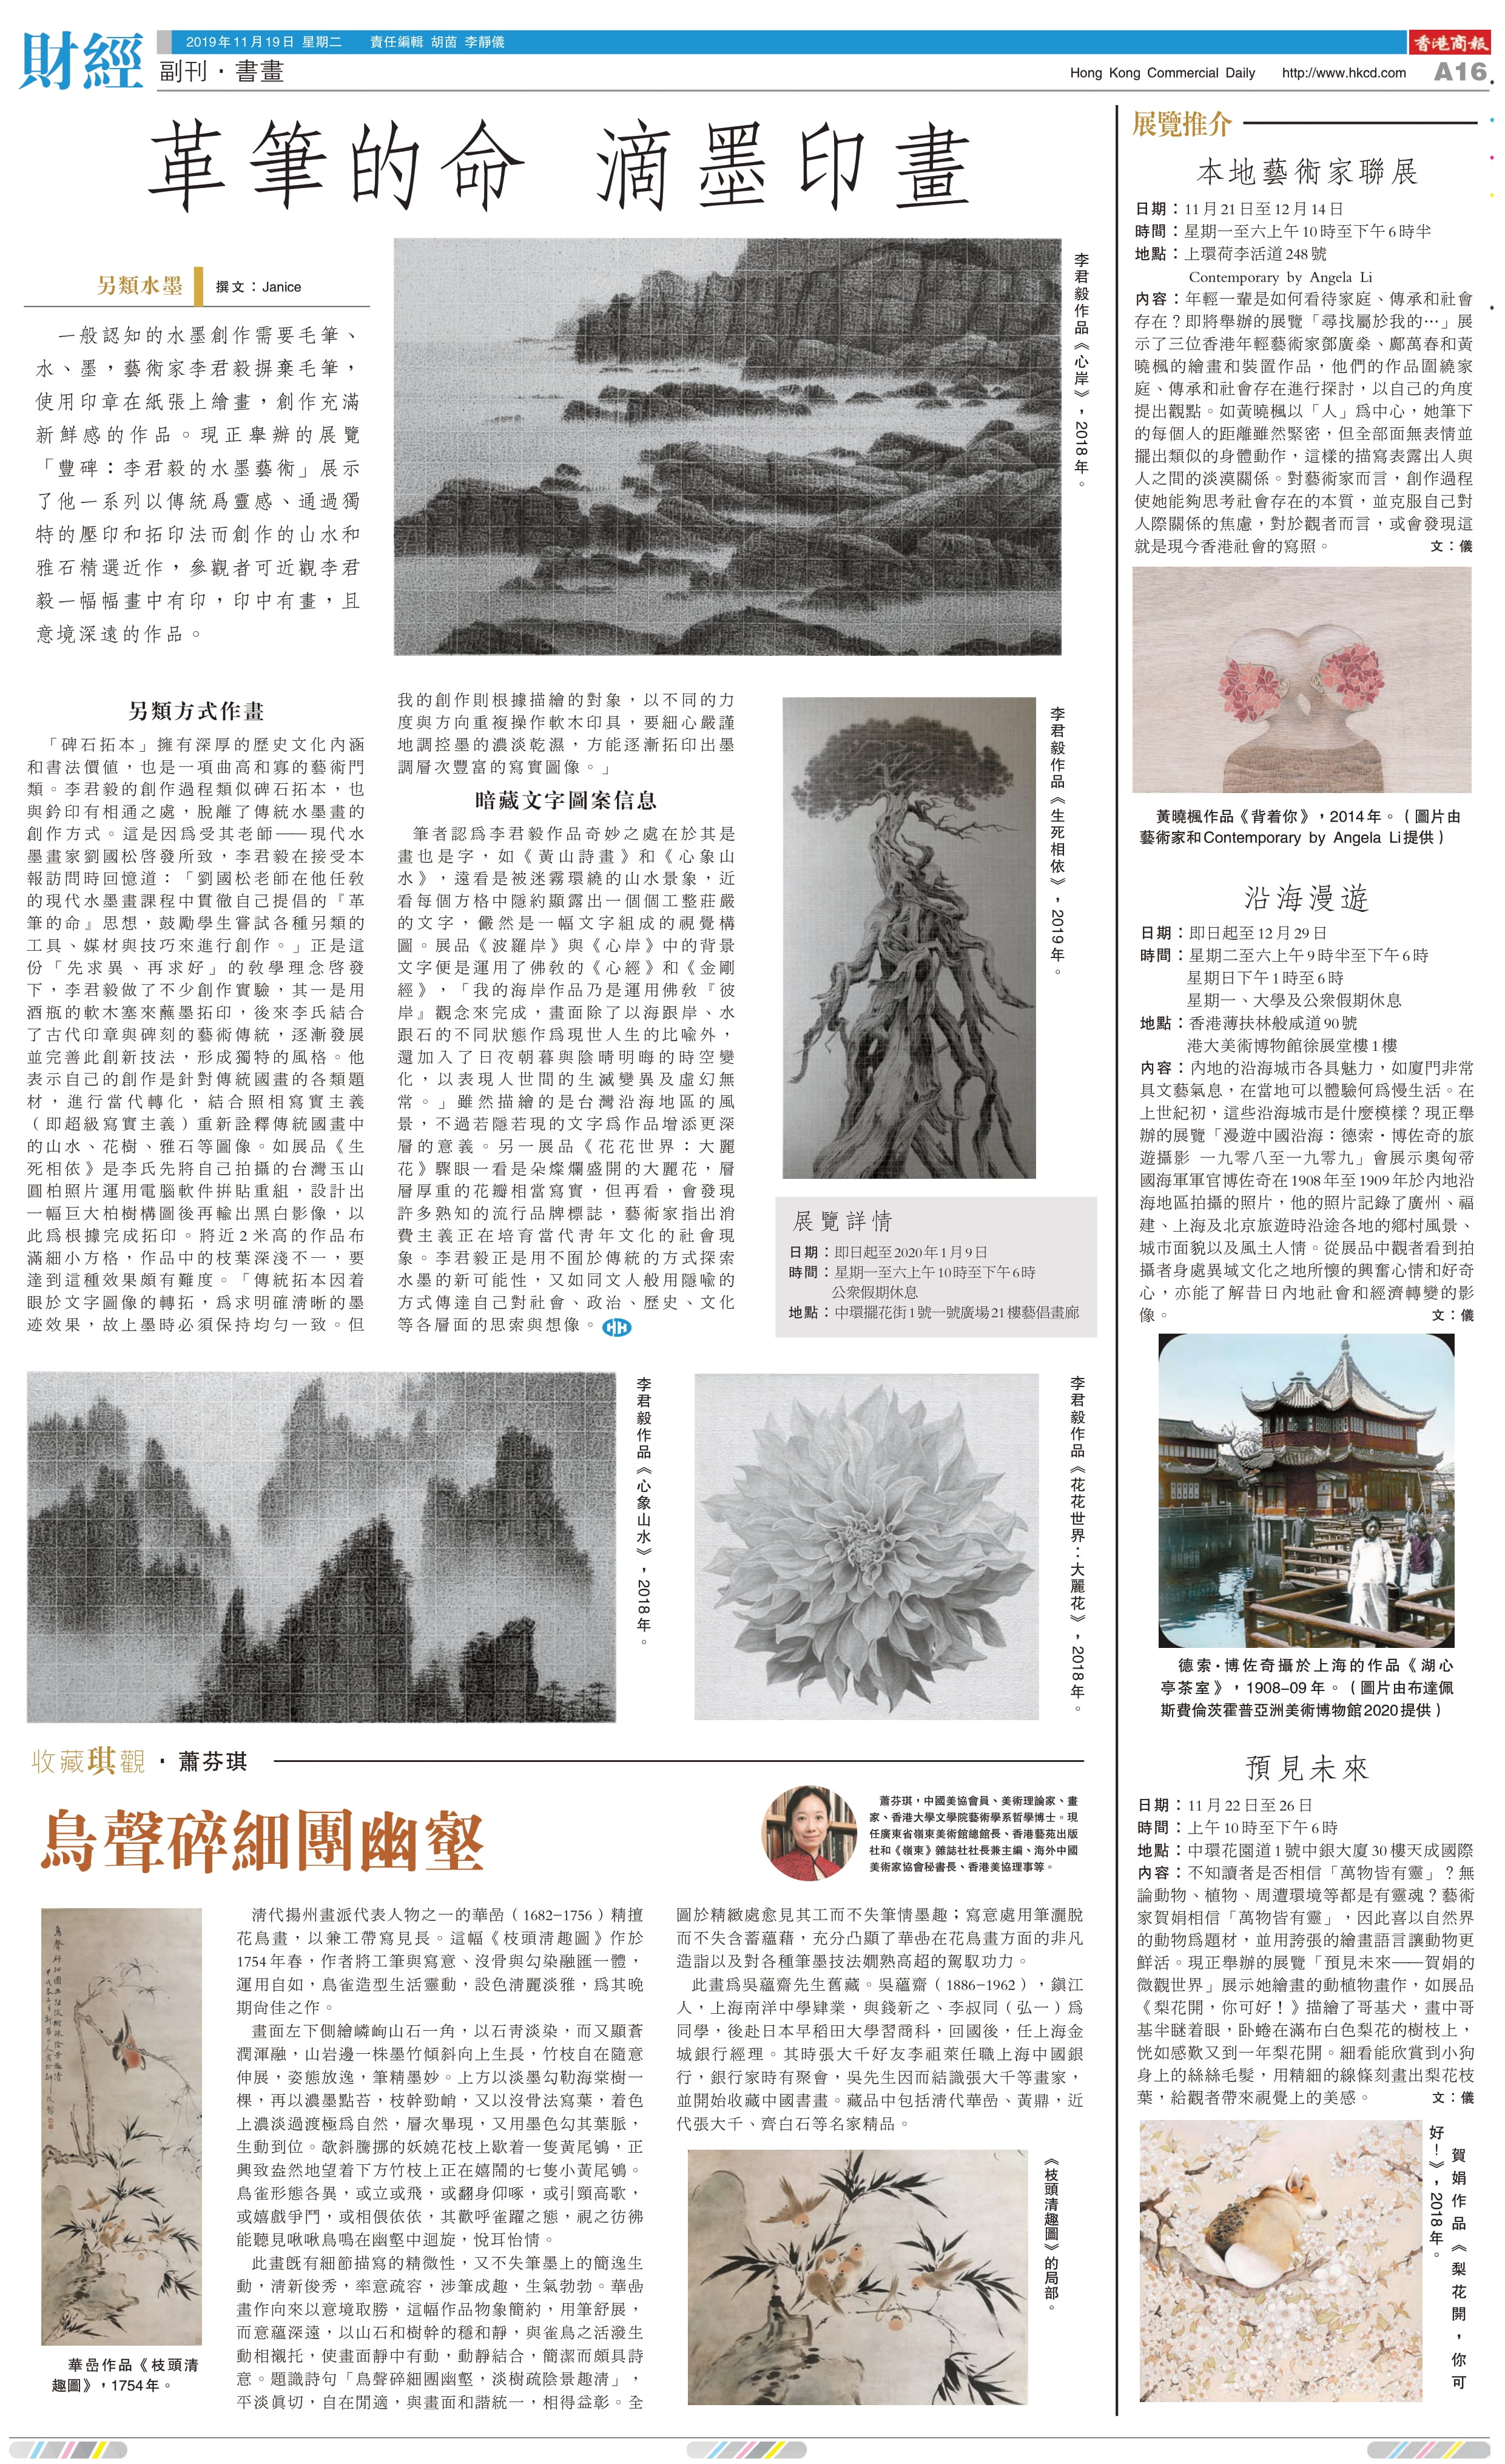 Hong Kong Commercial Daily，革筆的命 滴墨印畫，November 2019